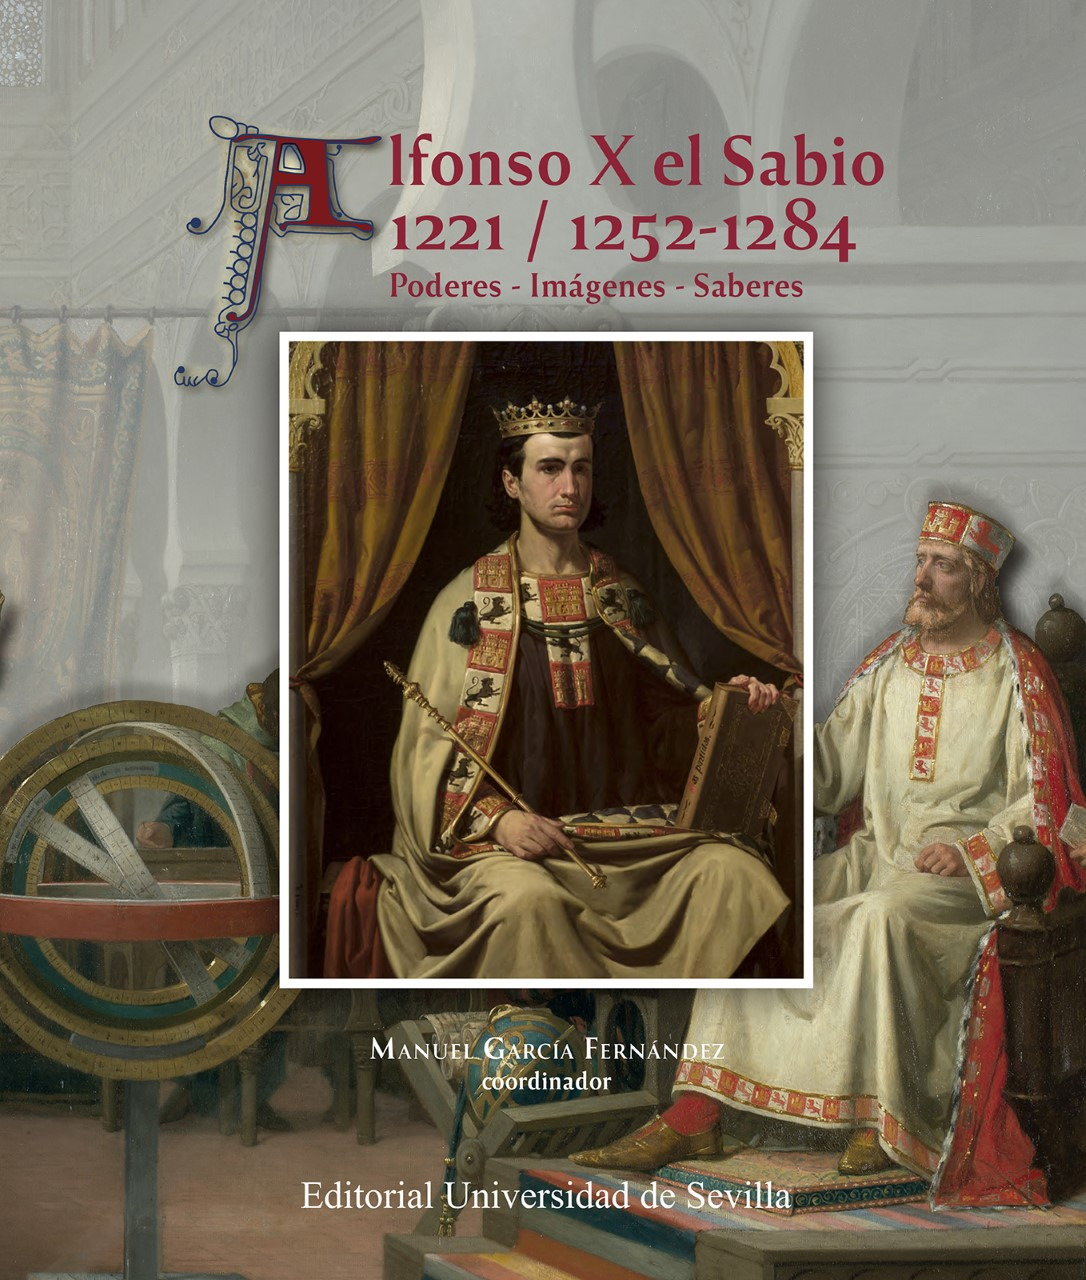 Alfonso X "El Sabio" (12211252/1284). Los poderes, las imágenes y los saberes del monarca y su tiempo